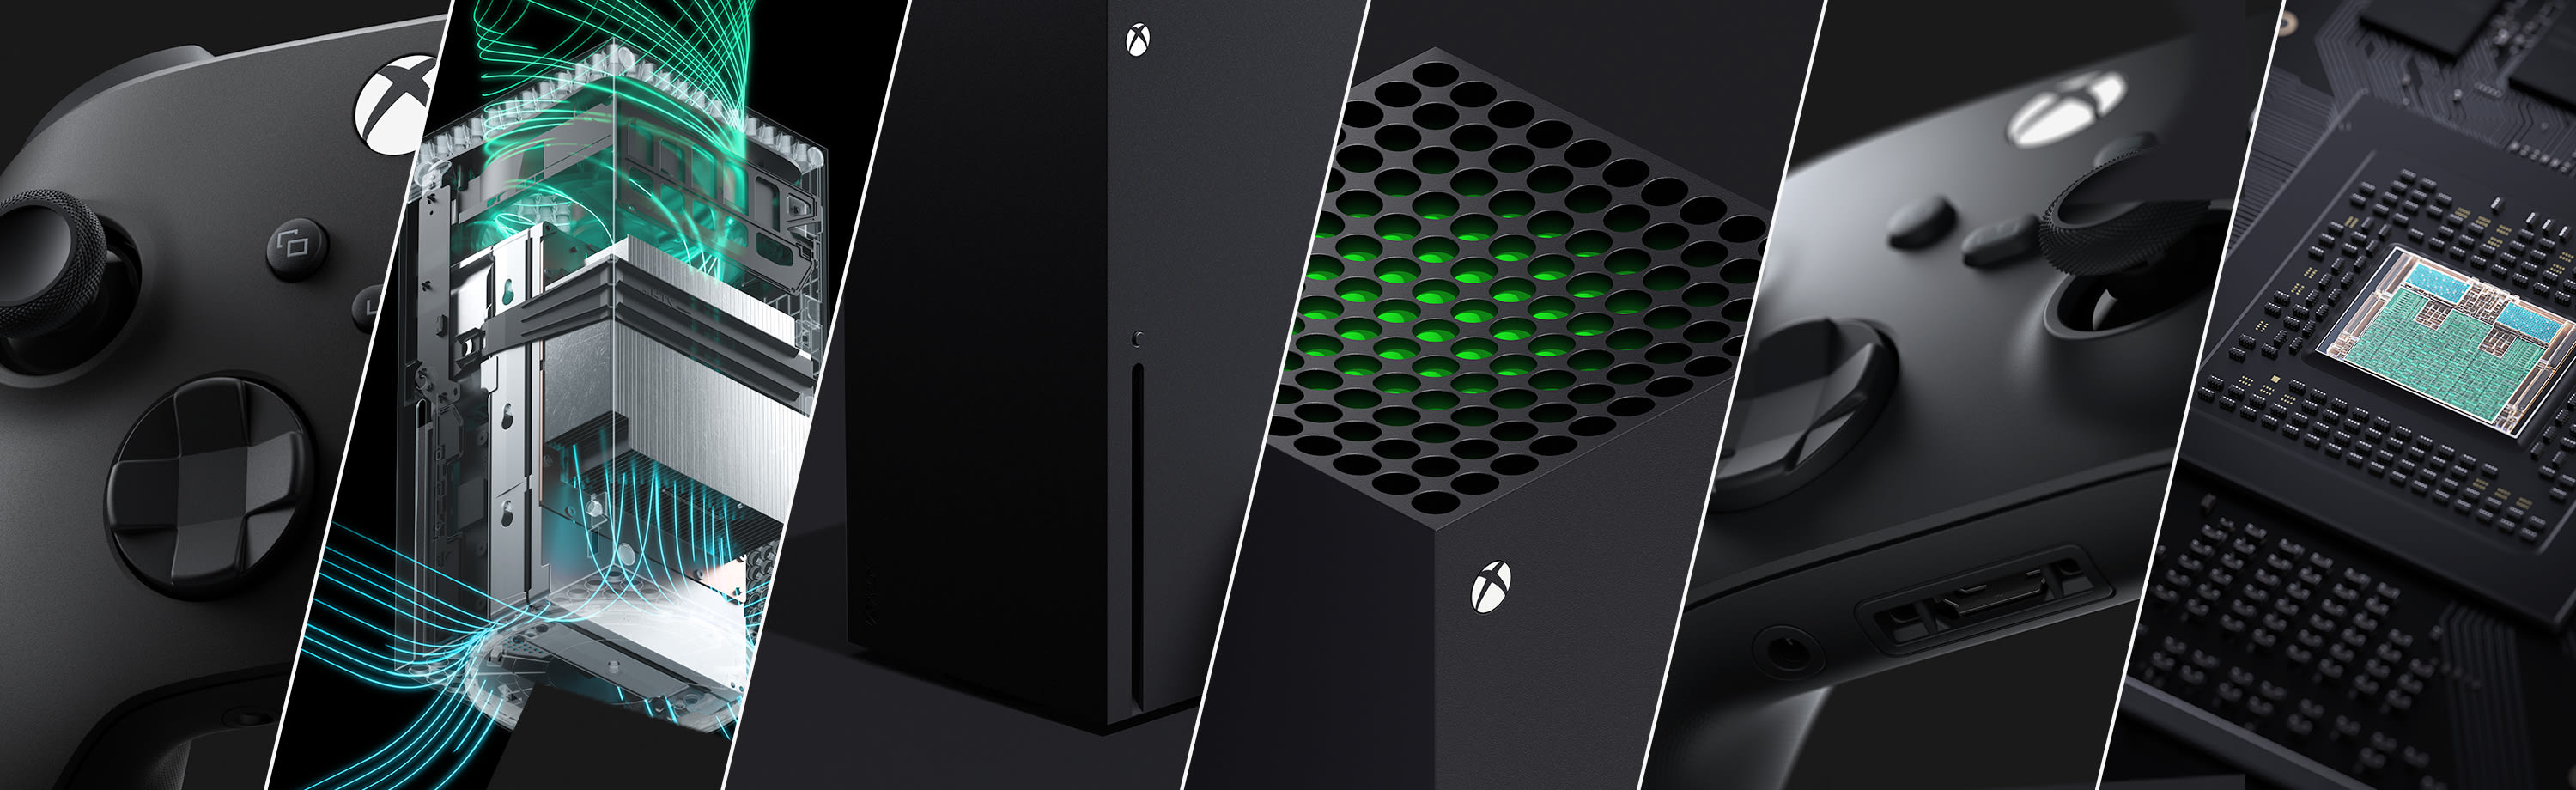 Xbox Series X New Specs Announced